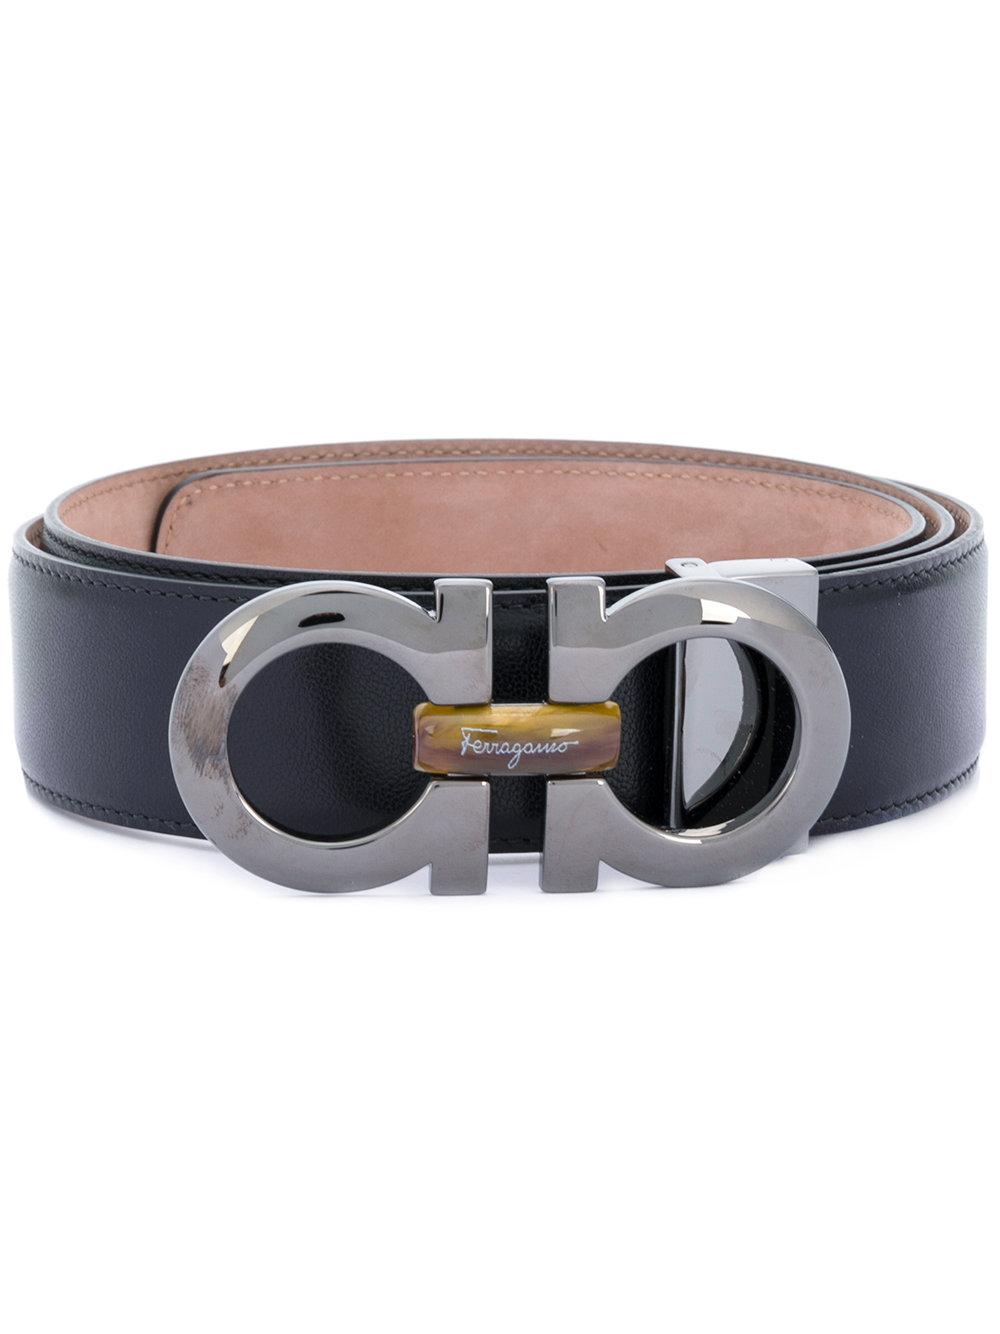 Lyst - Ferragamo Double Gancini Buckle Belt in Black for Men